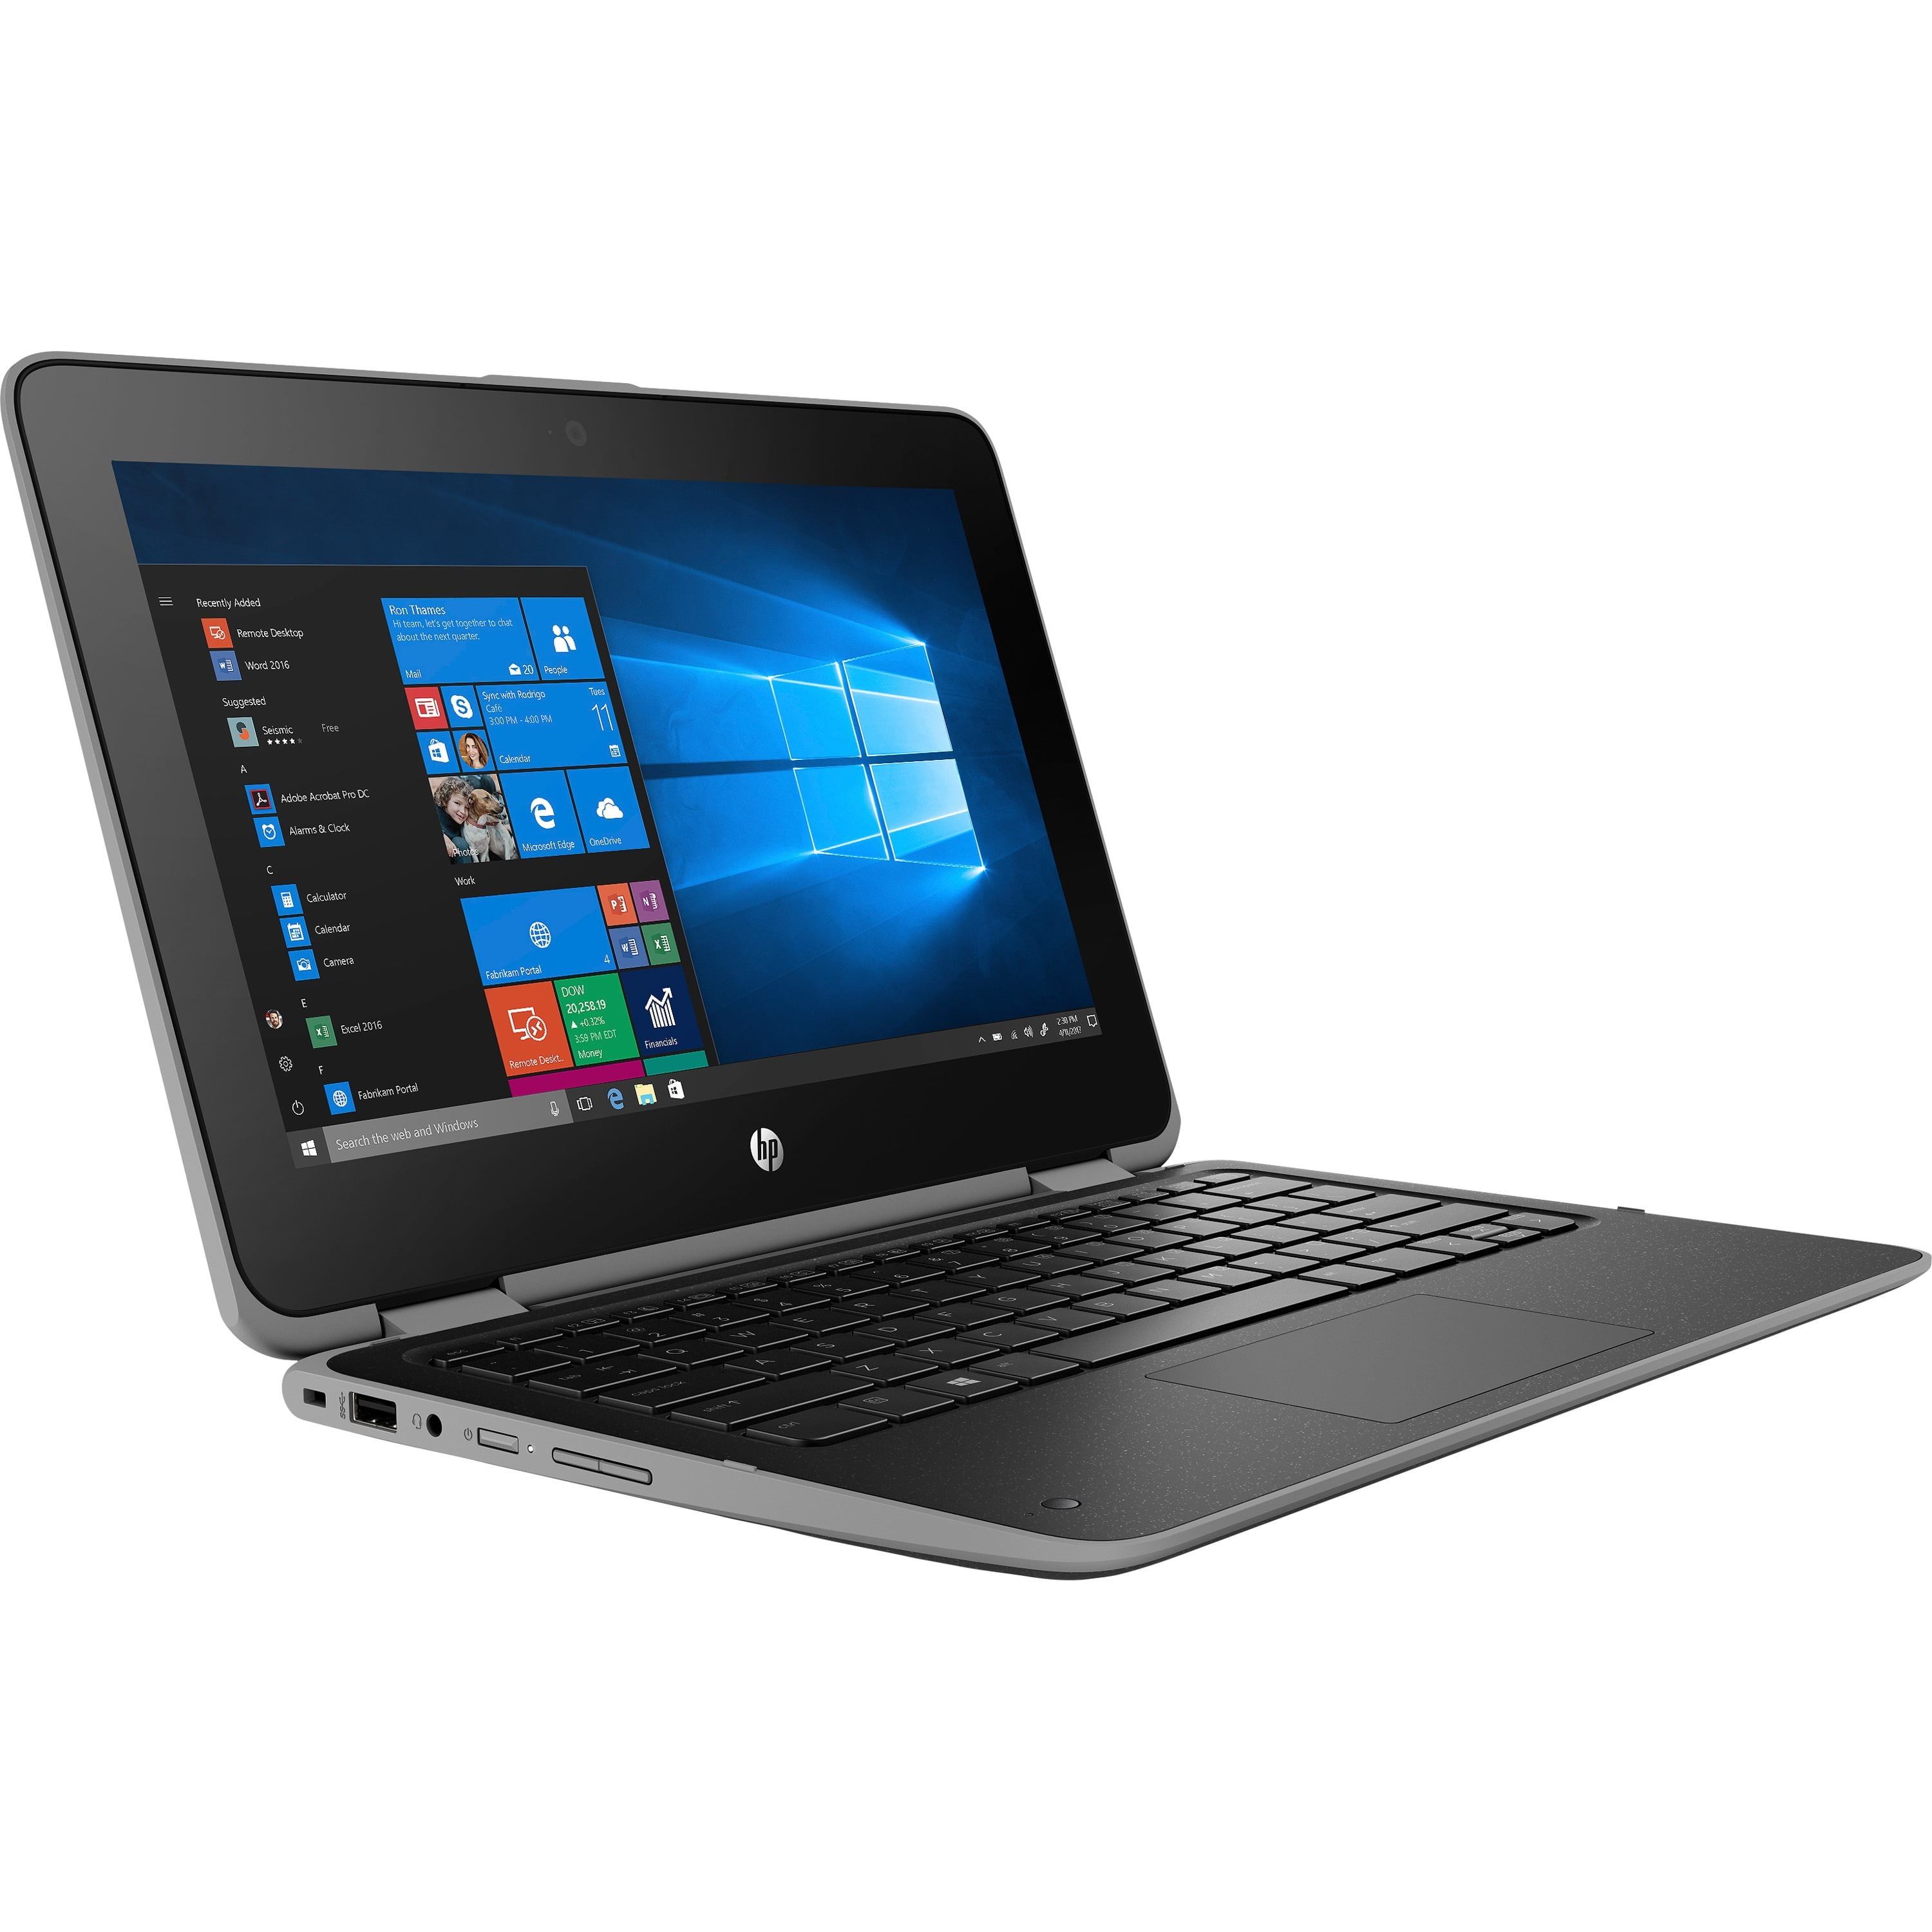 ProBook x360 11 G3 EE Notebook PC